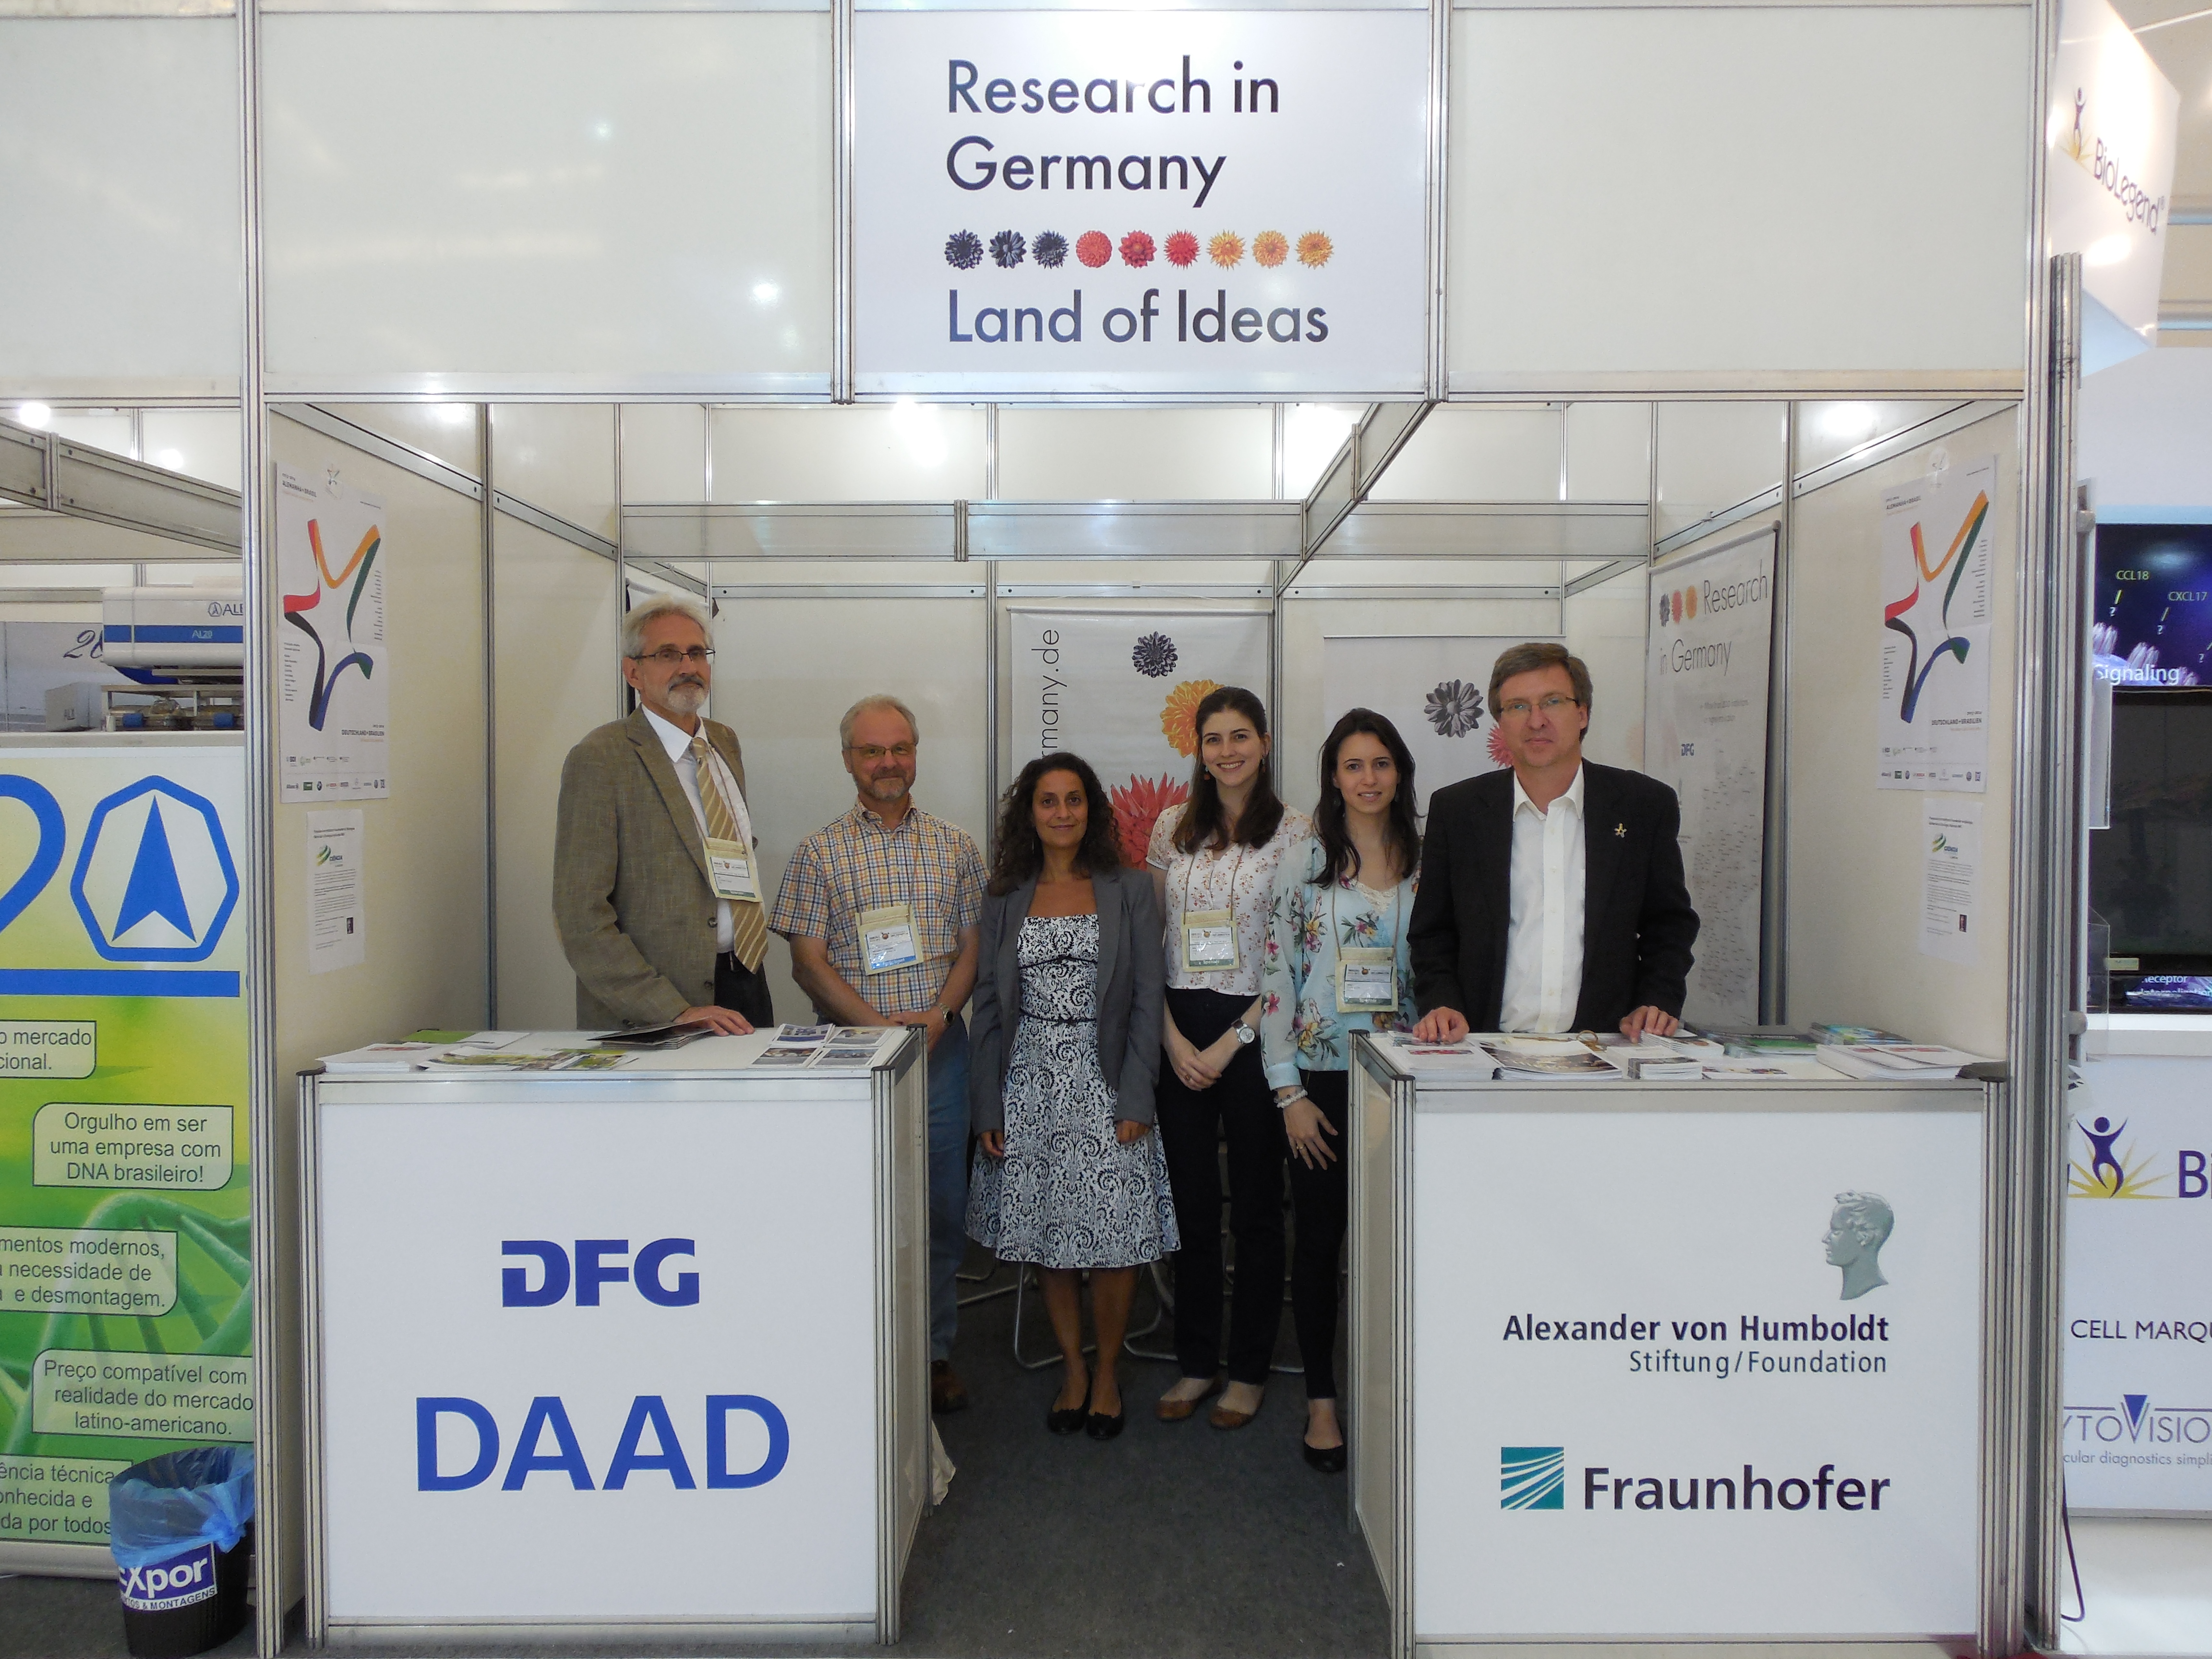 Representantes de las instituciones presentes en el stand de Research in Germany en el congreso de inmunología